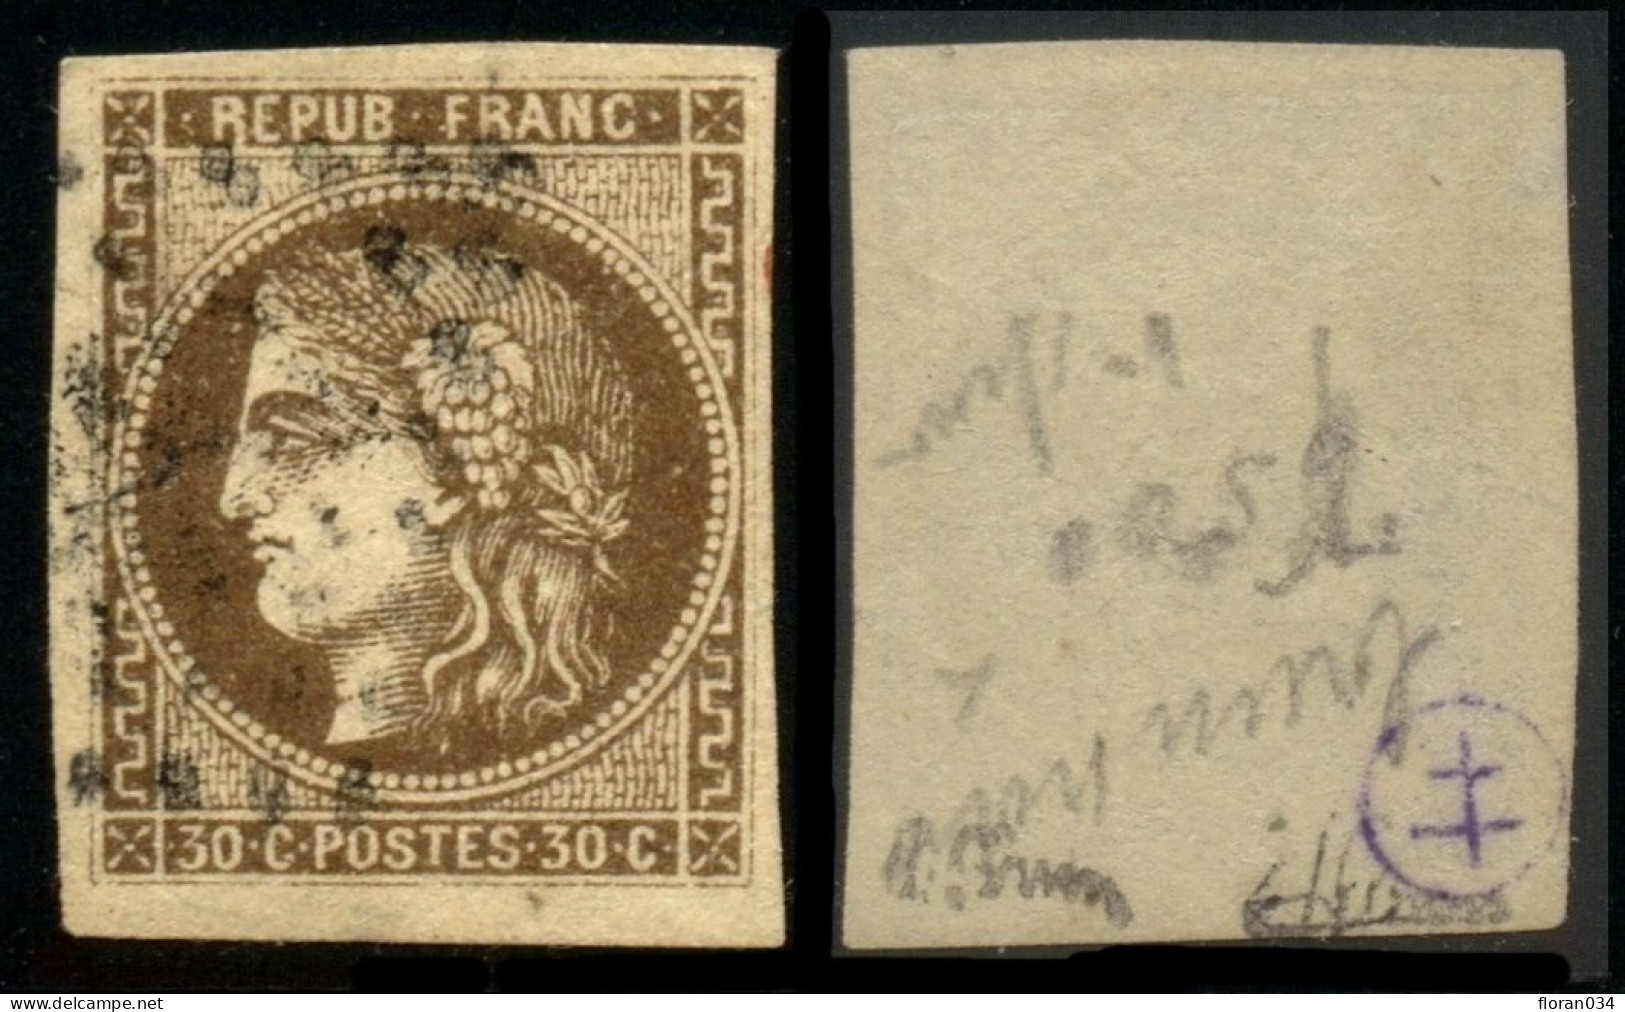 France N° 47e R Relié Au Cadre Obl. GC - Signé A.Brun/ JF Brun - Cote 560 Euros - TB Qualité - 1870 Bordeaux Printing